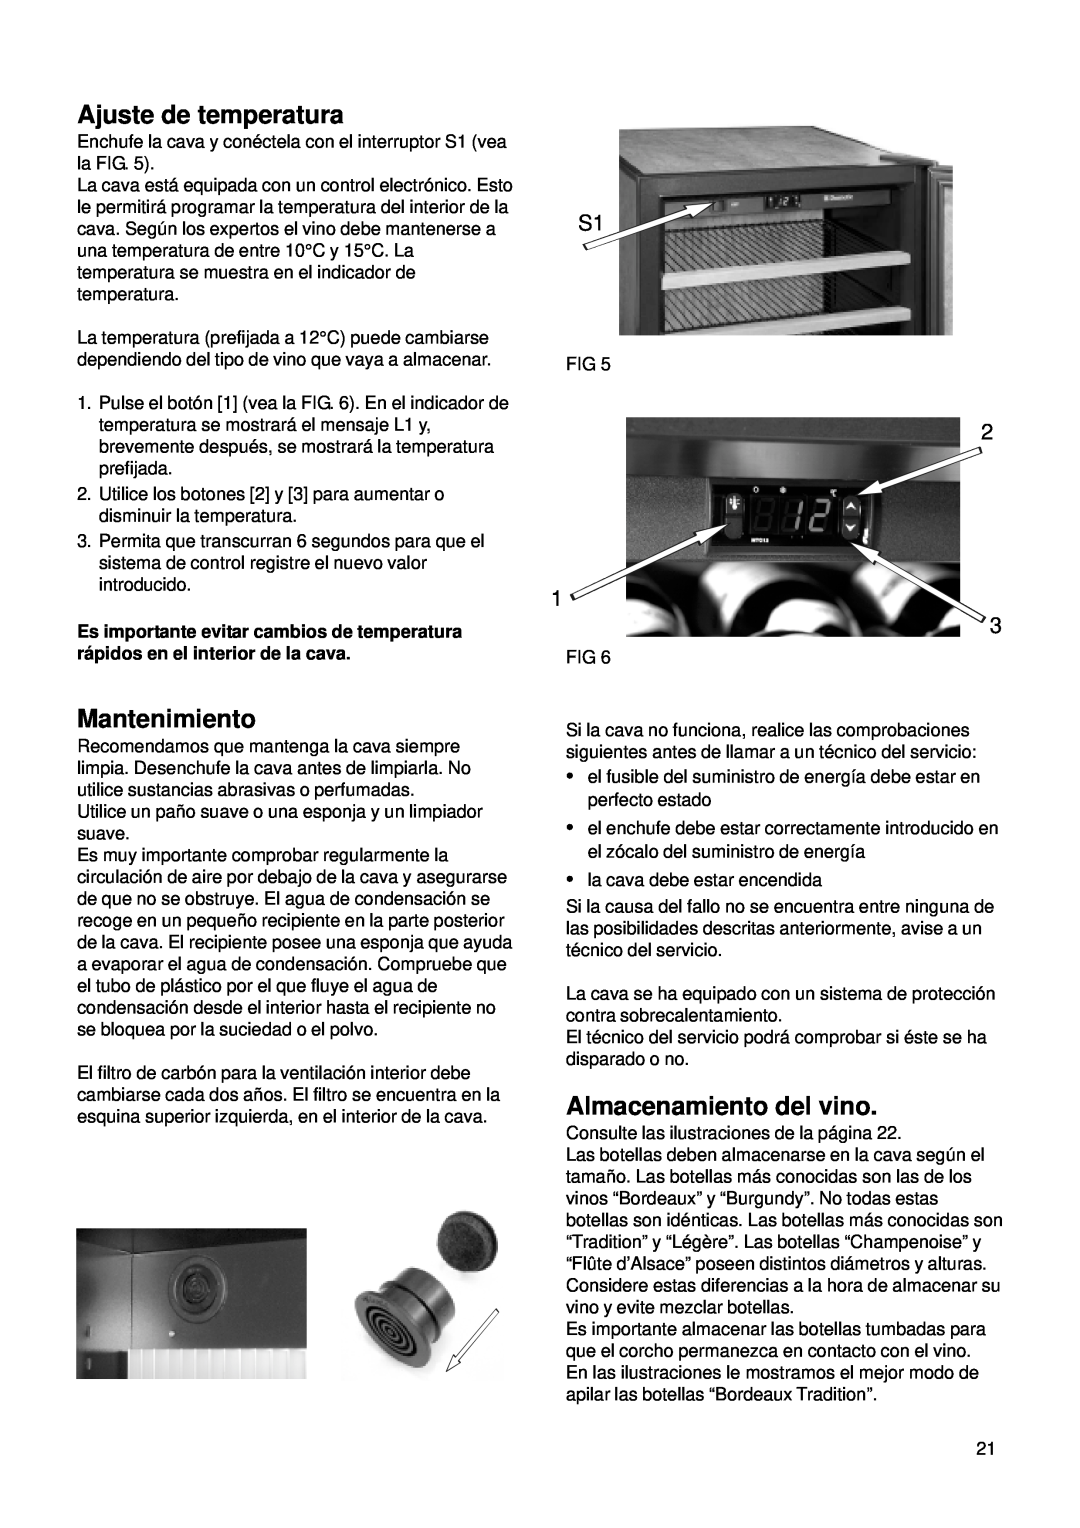 Dometic CS 52 instruction manual Ajuste de temperatura, Mantenimiento, Almacenamiento del vino 